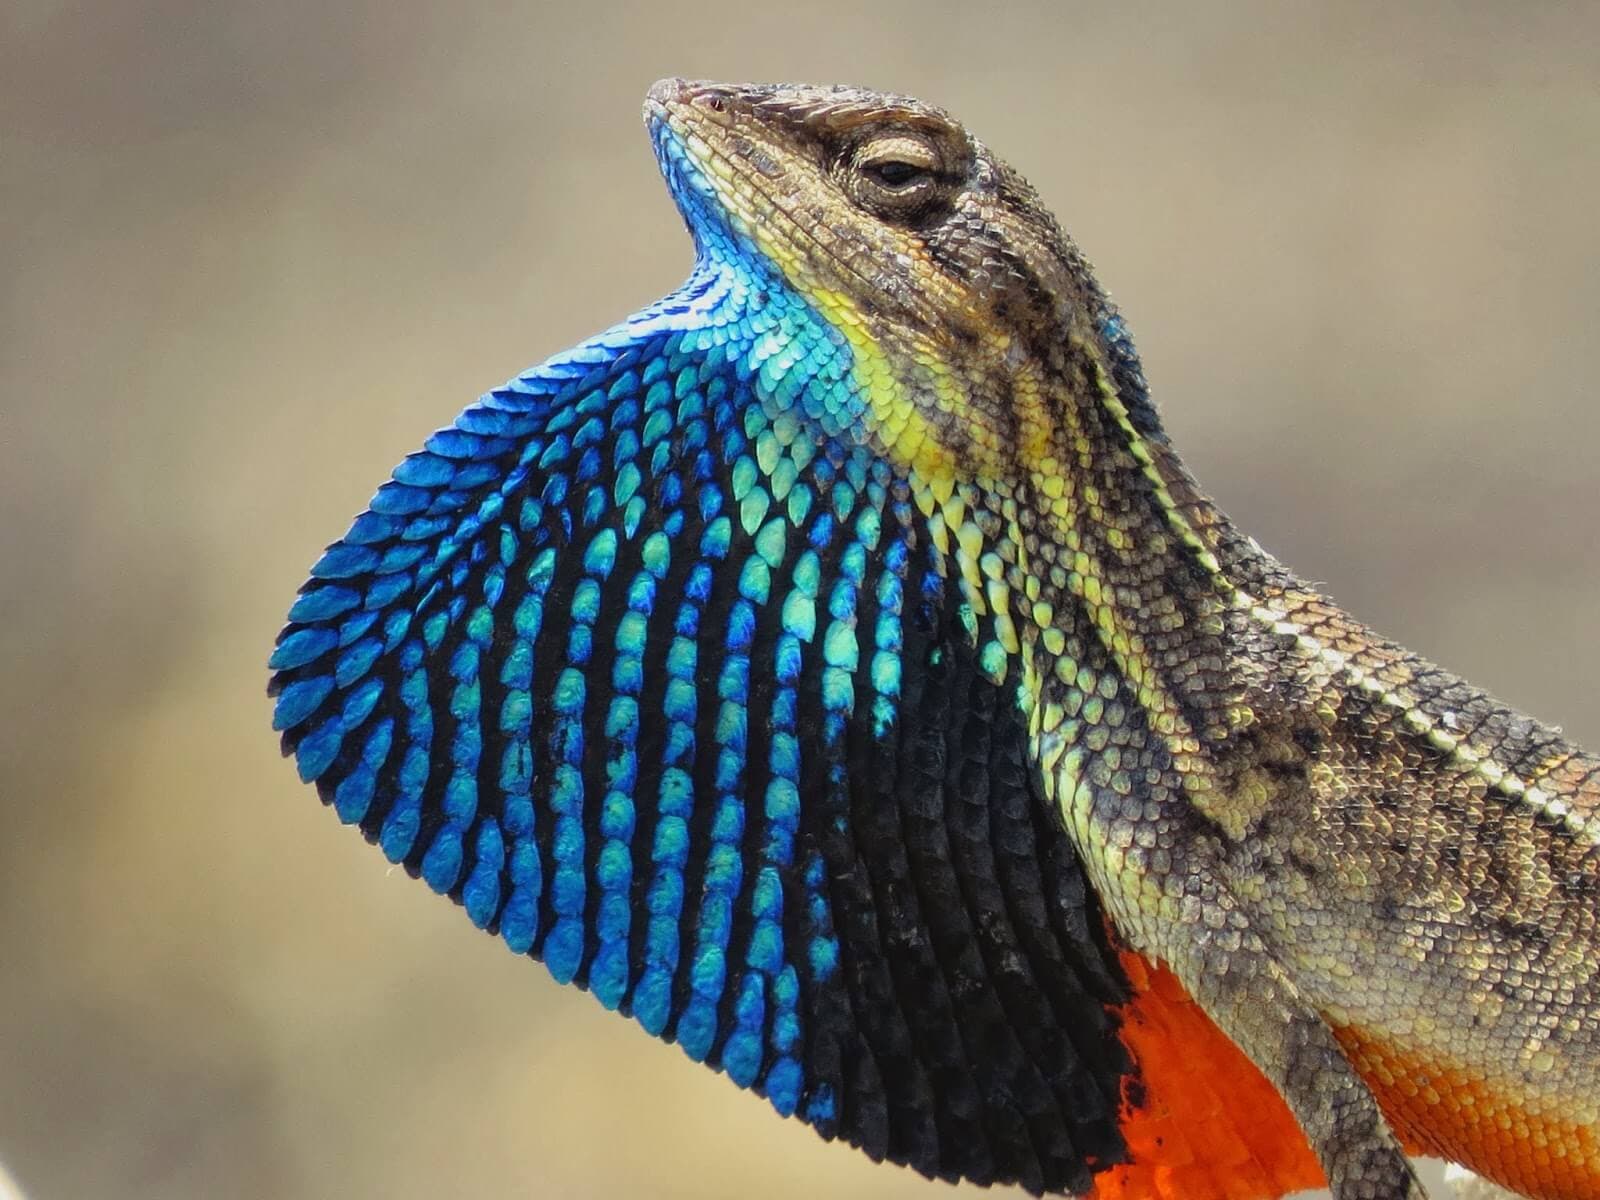 Una especie de reptil endémica Lagarto de labio de garganta pintado y abanico en la zona de amortiguamiento del parque nacional de Yala en Sri Lanka